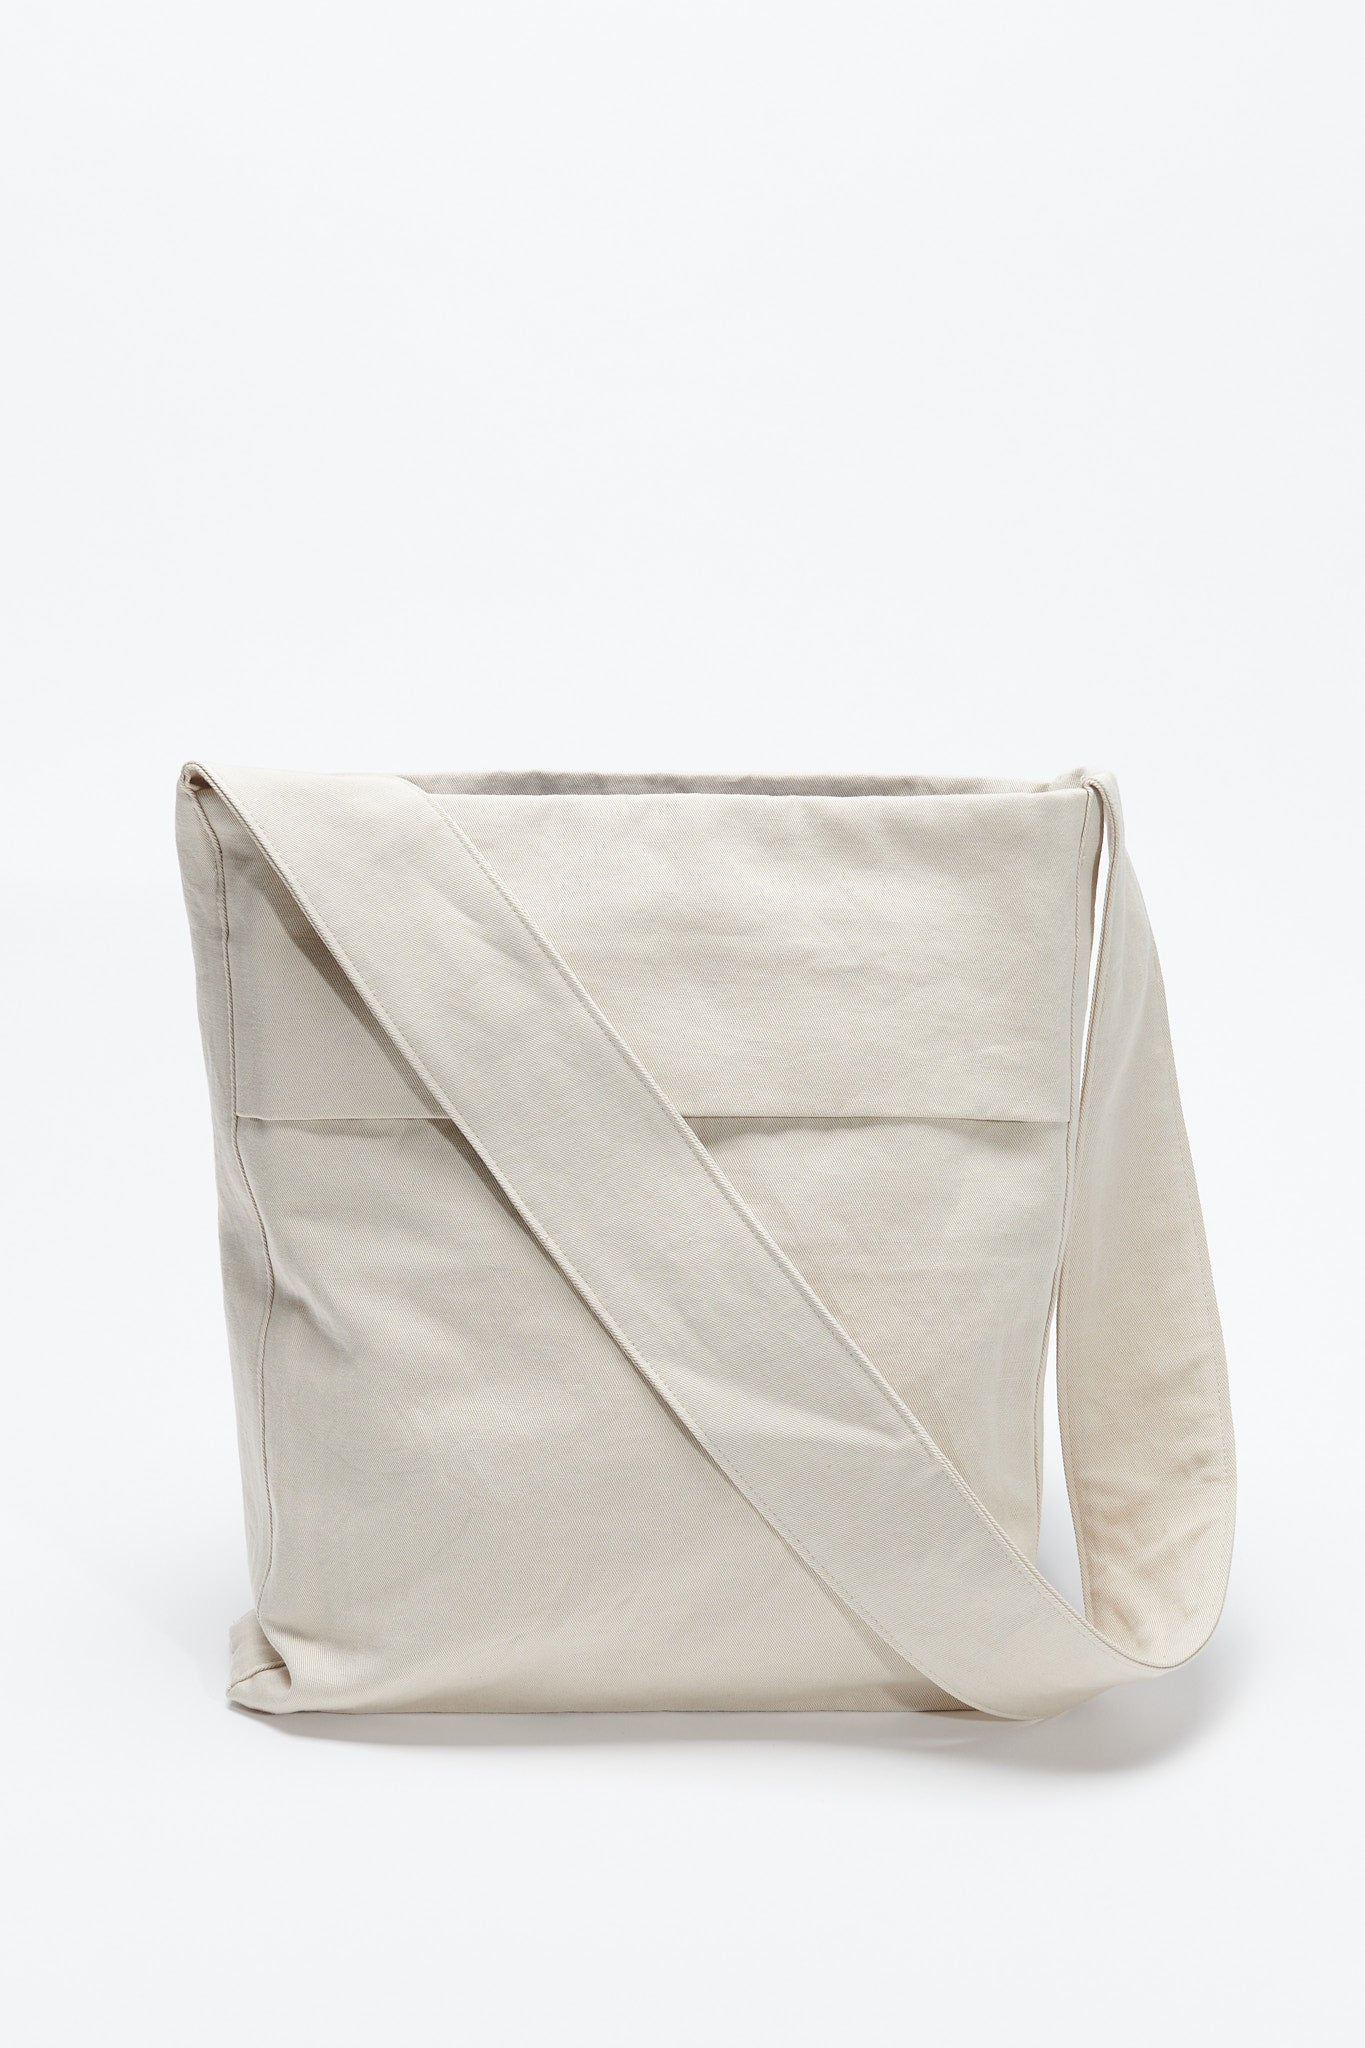 A4 Shoulder Bag - Light Beige